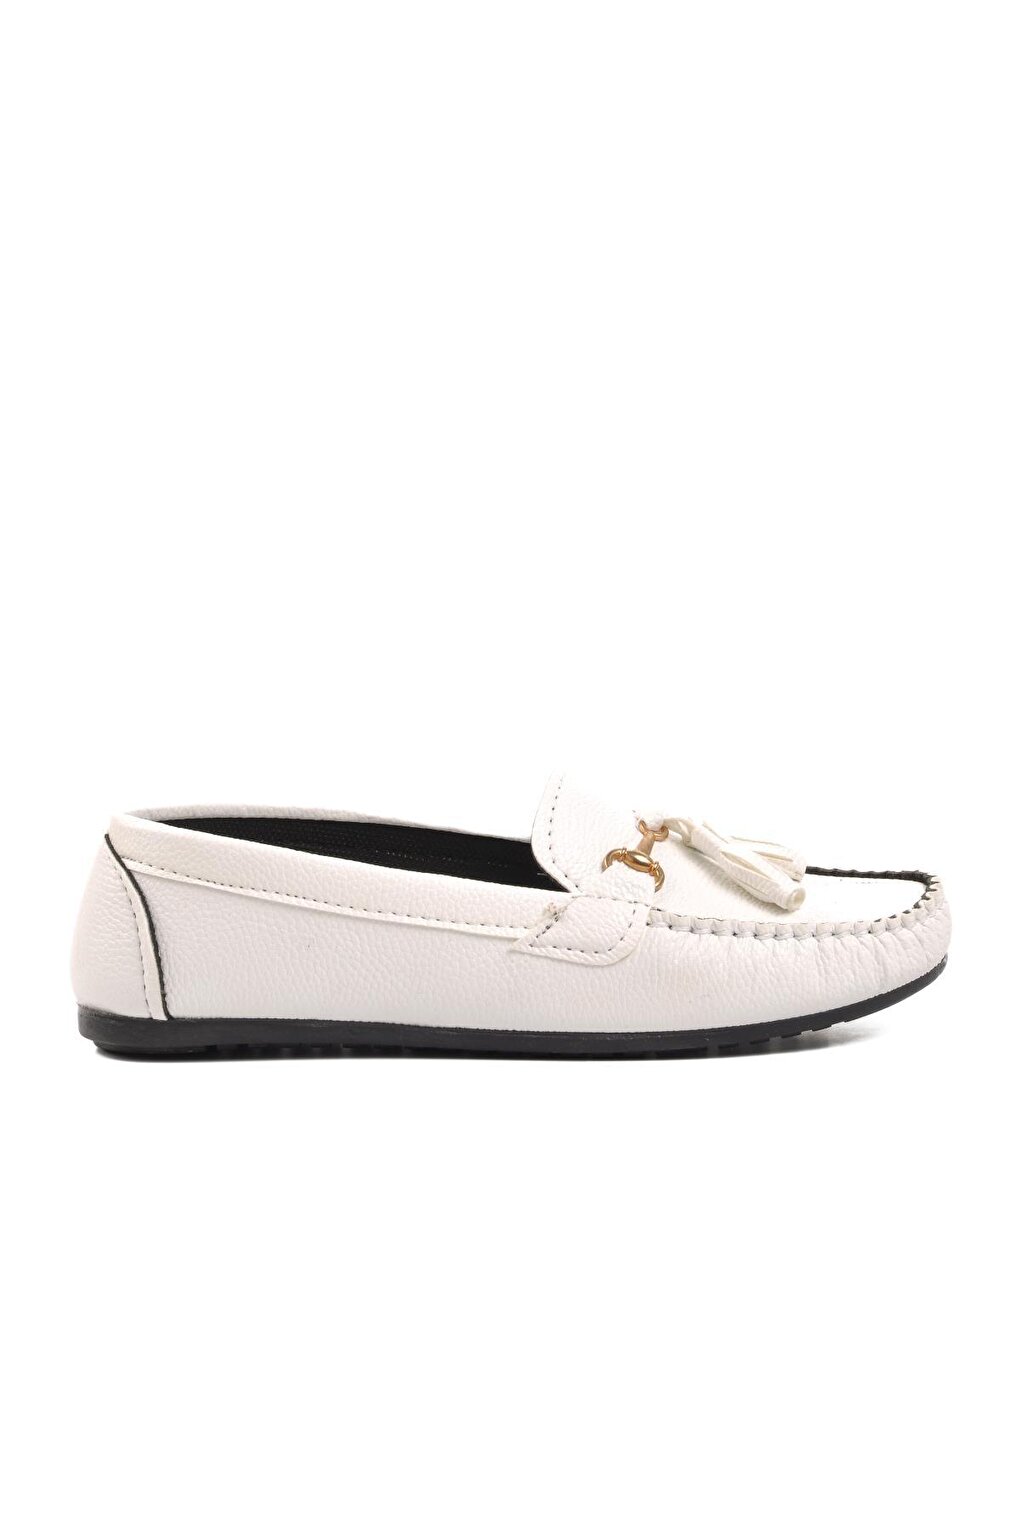 2Y08 Белая женская повседневная обувь Ayakmod цена и фото